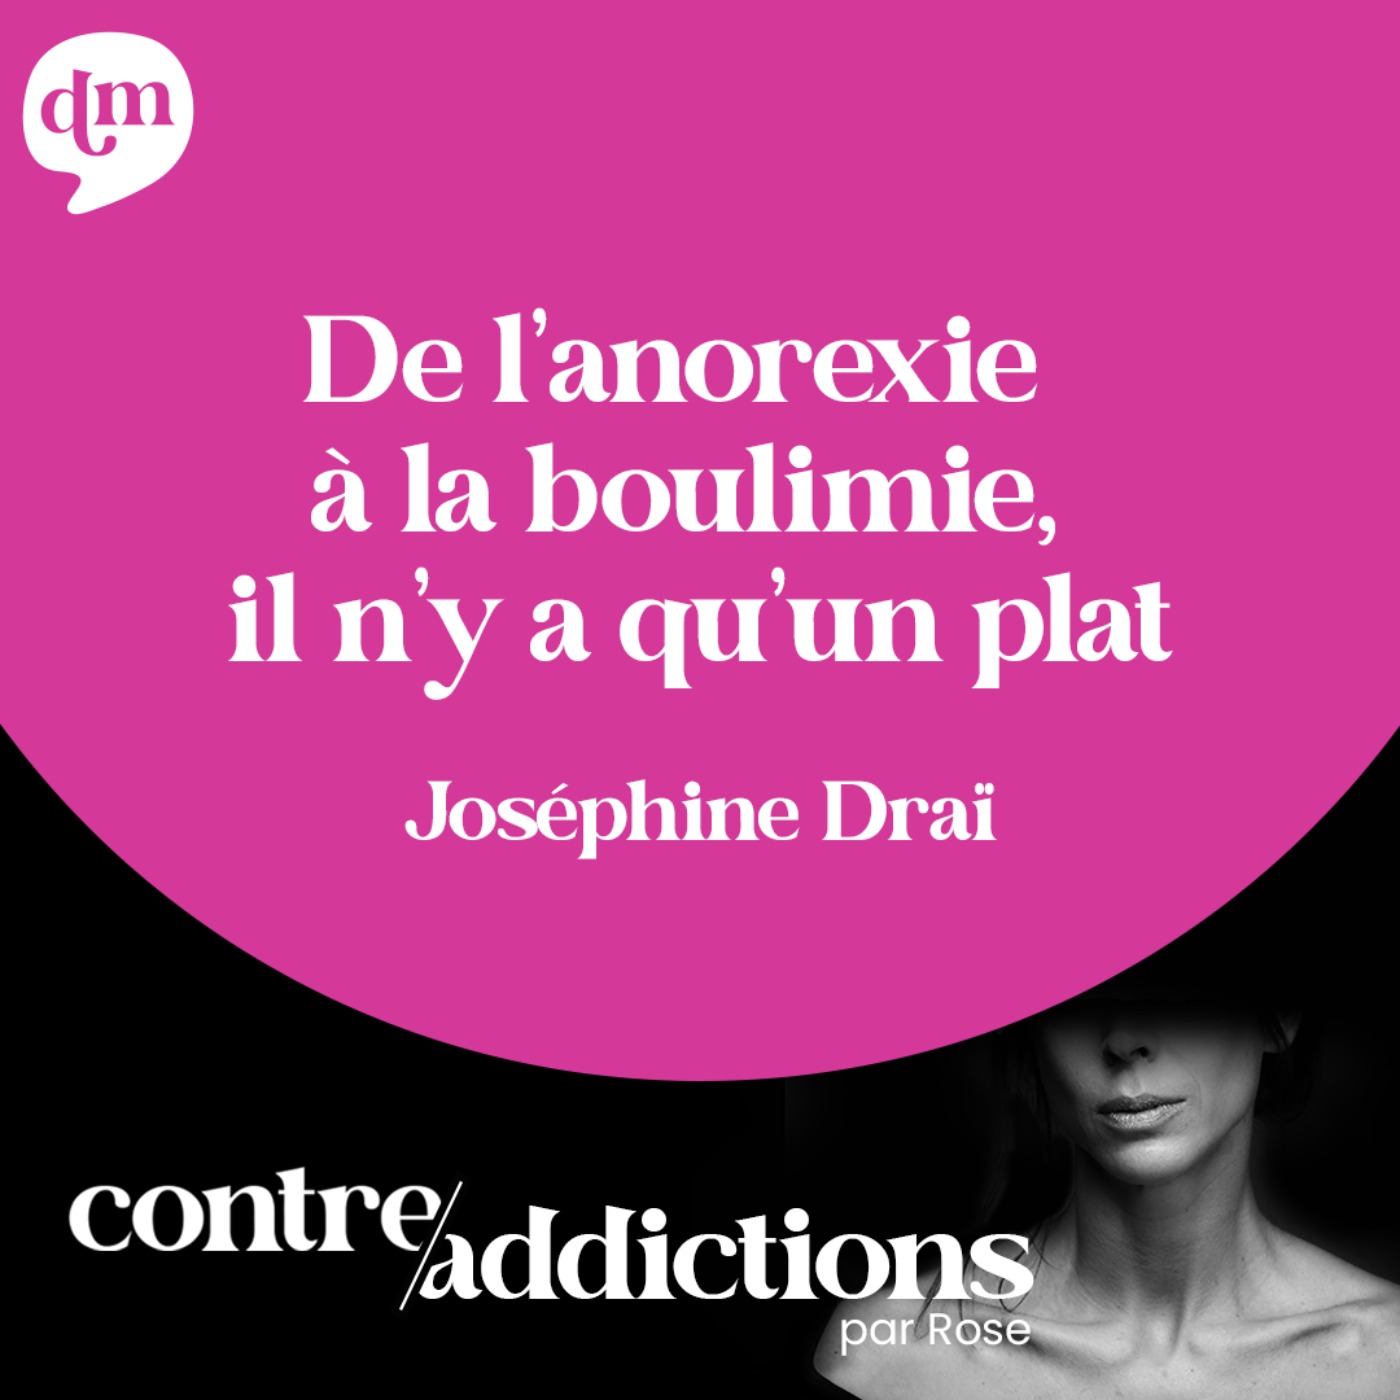 Teasing du prochain épisode -  De l’anorexie à la boulimie, il n’y a pas qu’un plat avec Josephine Draï